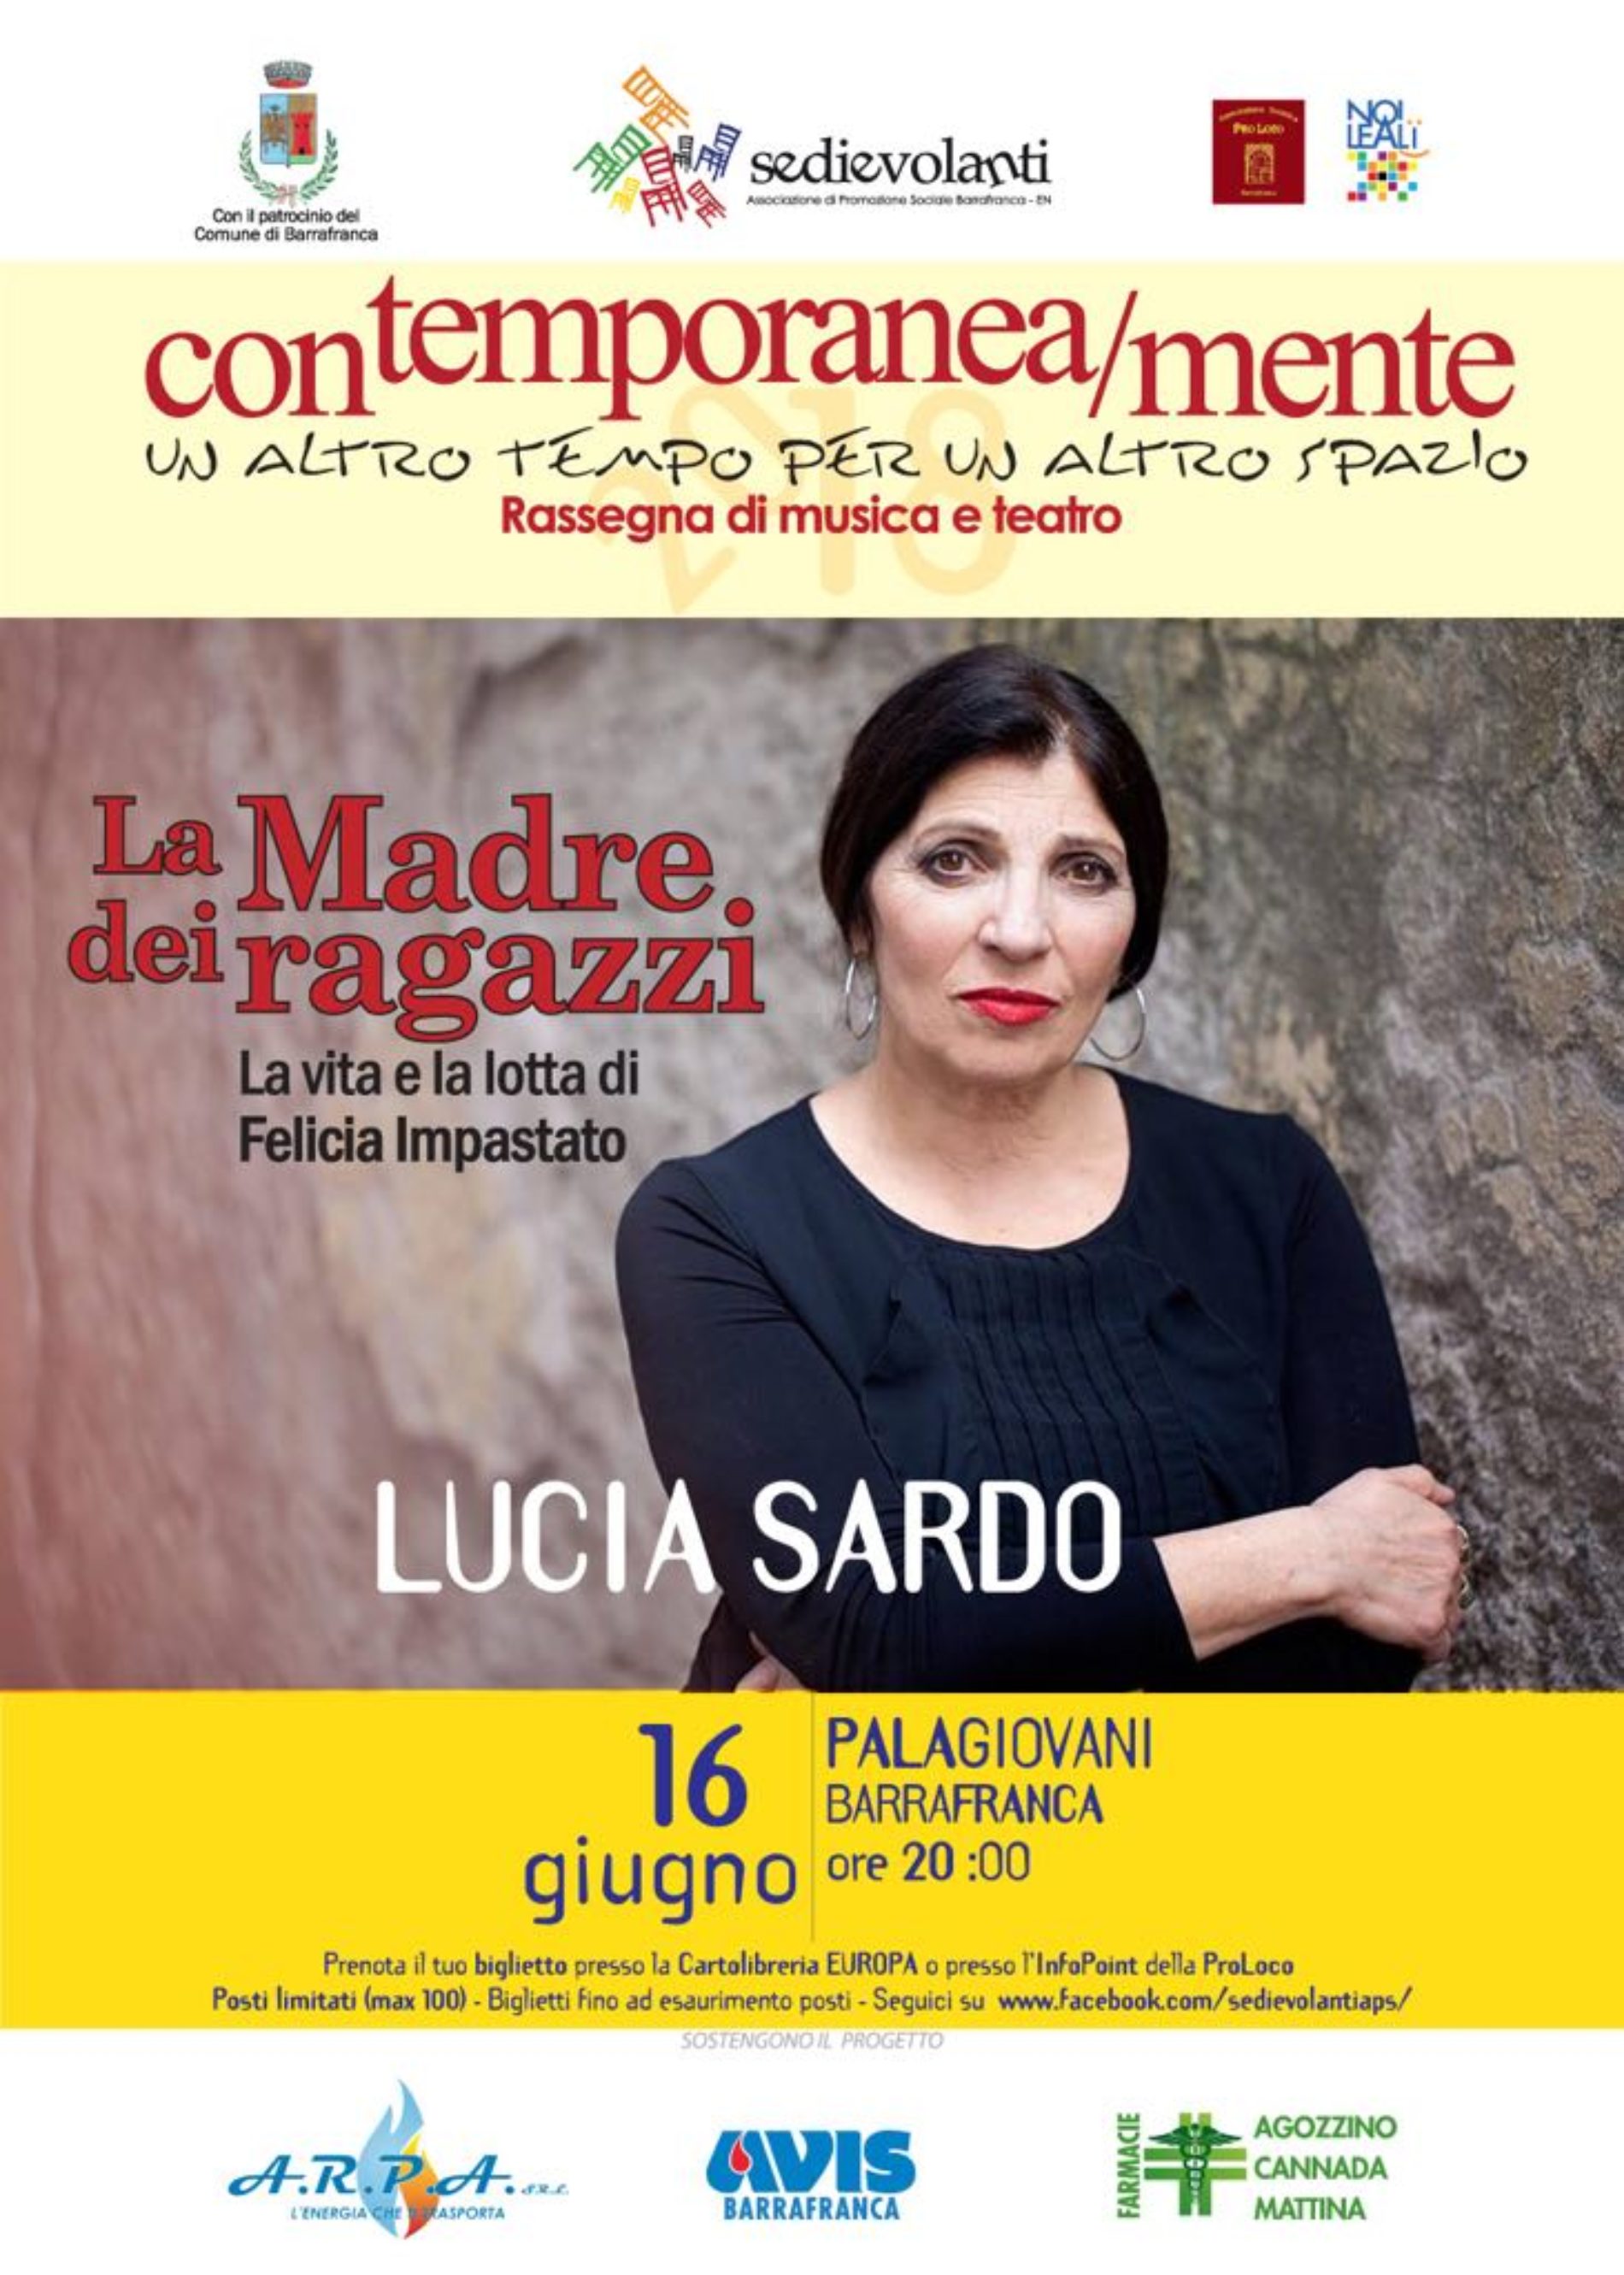 Barrafranca. “Contemporanea/mente2018”, è la volta di Lucia Sardo ne ‘La Madre dei ragazzi’.